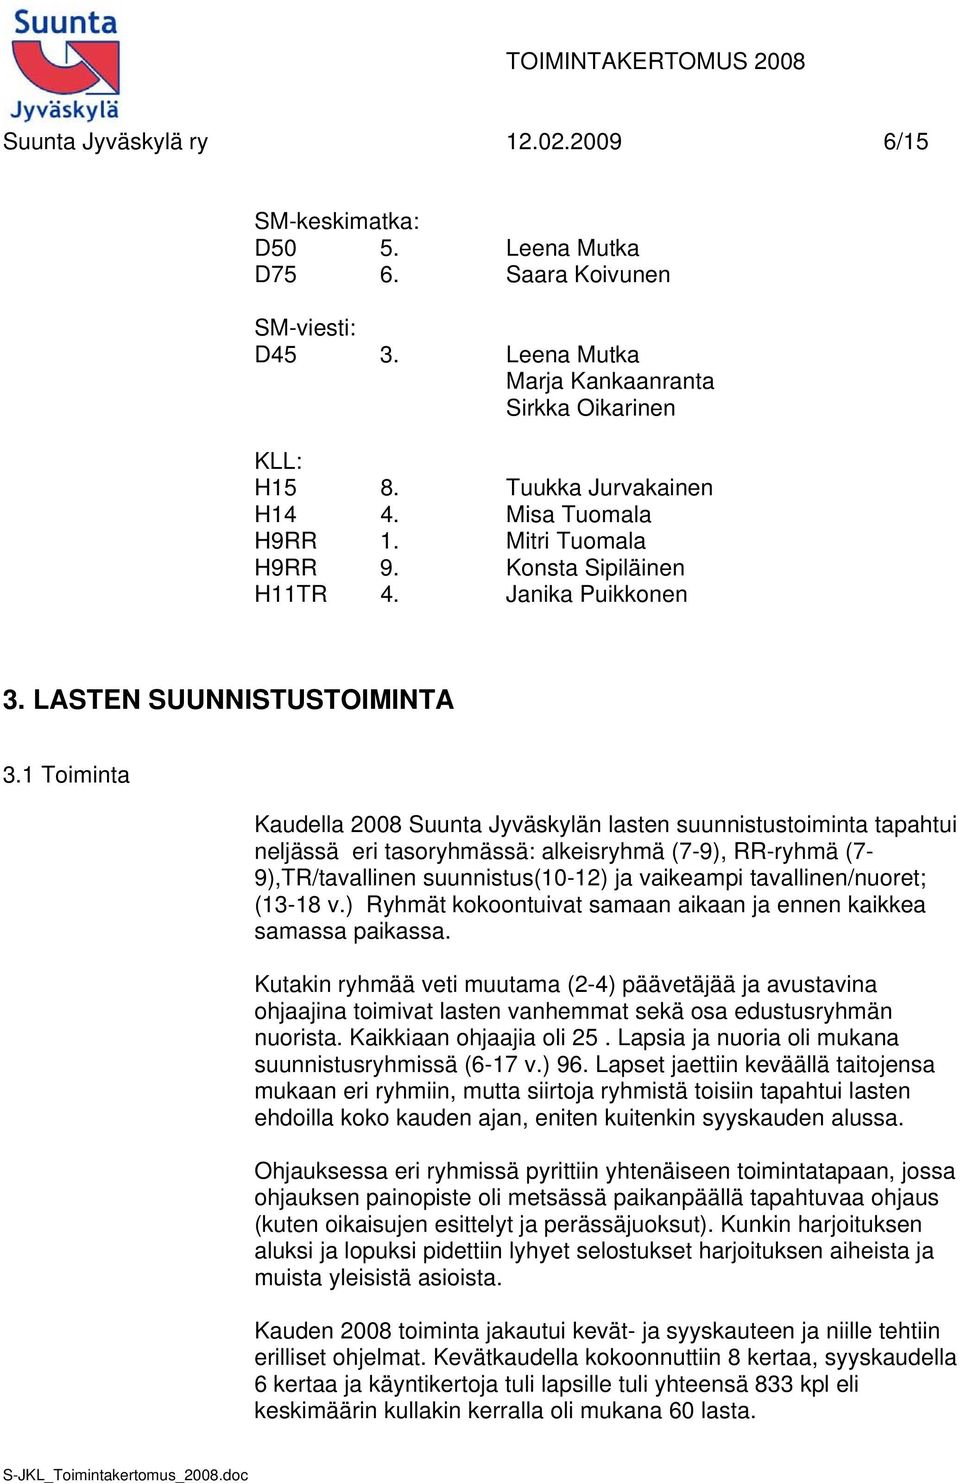 1 Toiminta Kaudella 2008 Suunta Jyväskylän lasten suunnistustoiminta tapahtui neljässä eri tasoryhmässä: alkeisryhmä (7-9), RR-ryhmä (7-9),TR/tavallinen suunnistus(10-12) ja vaikeampi